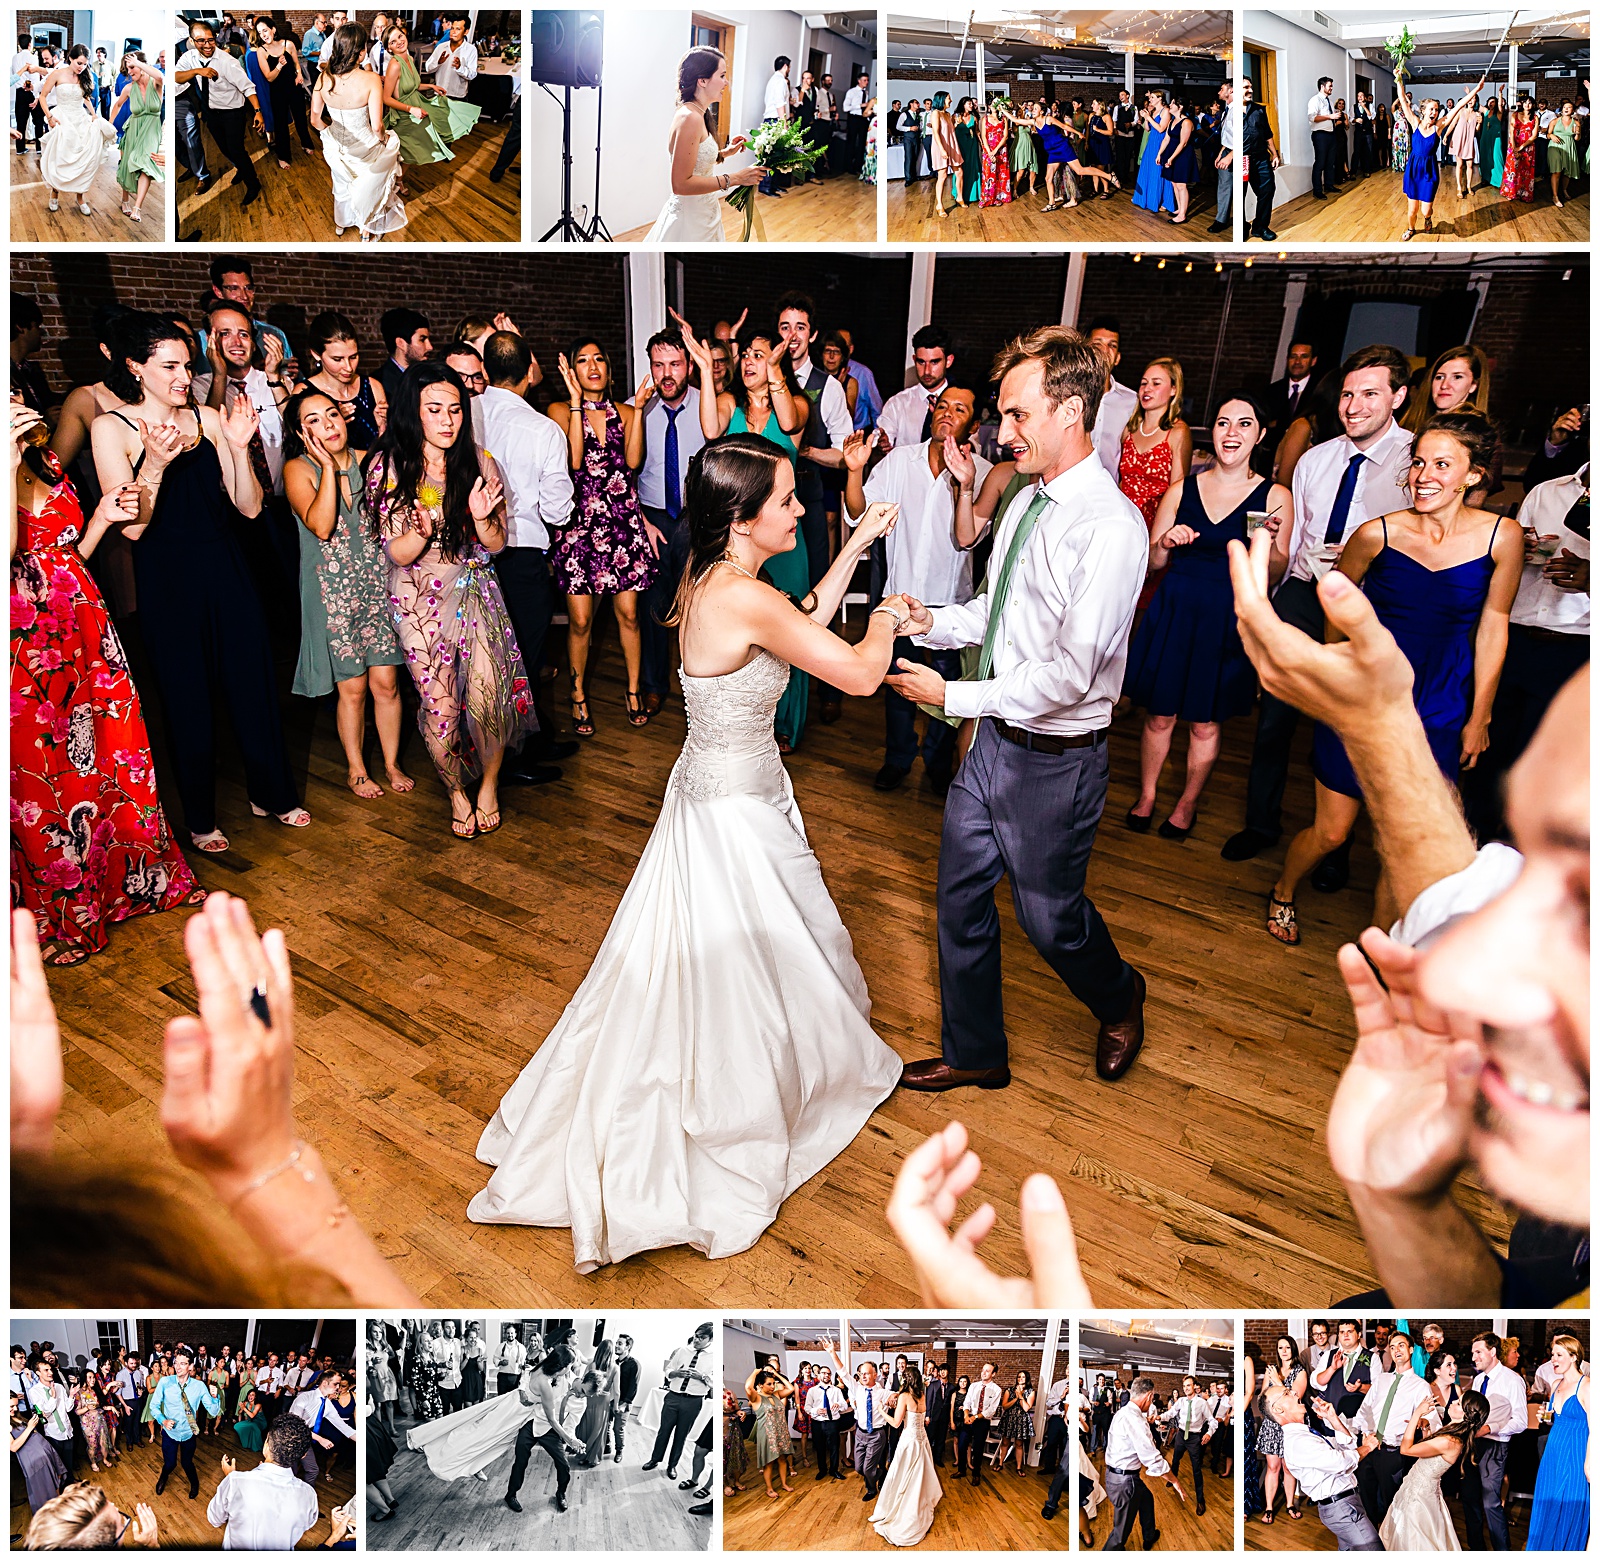 boulder, CO wedding dance photos